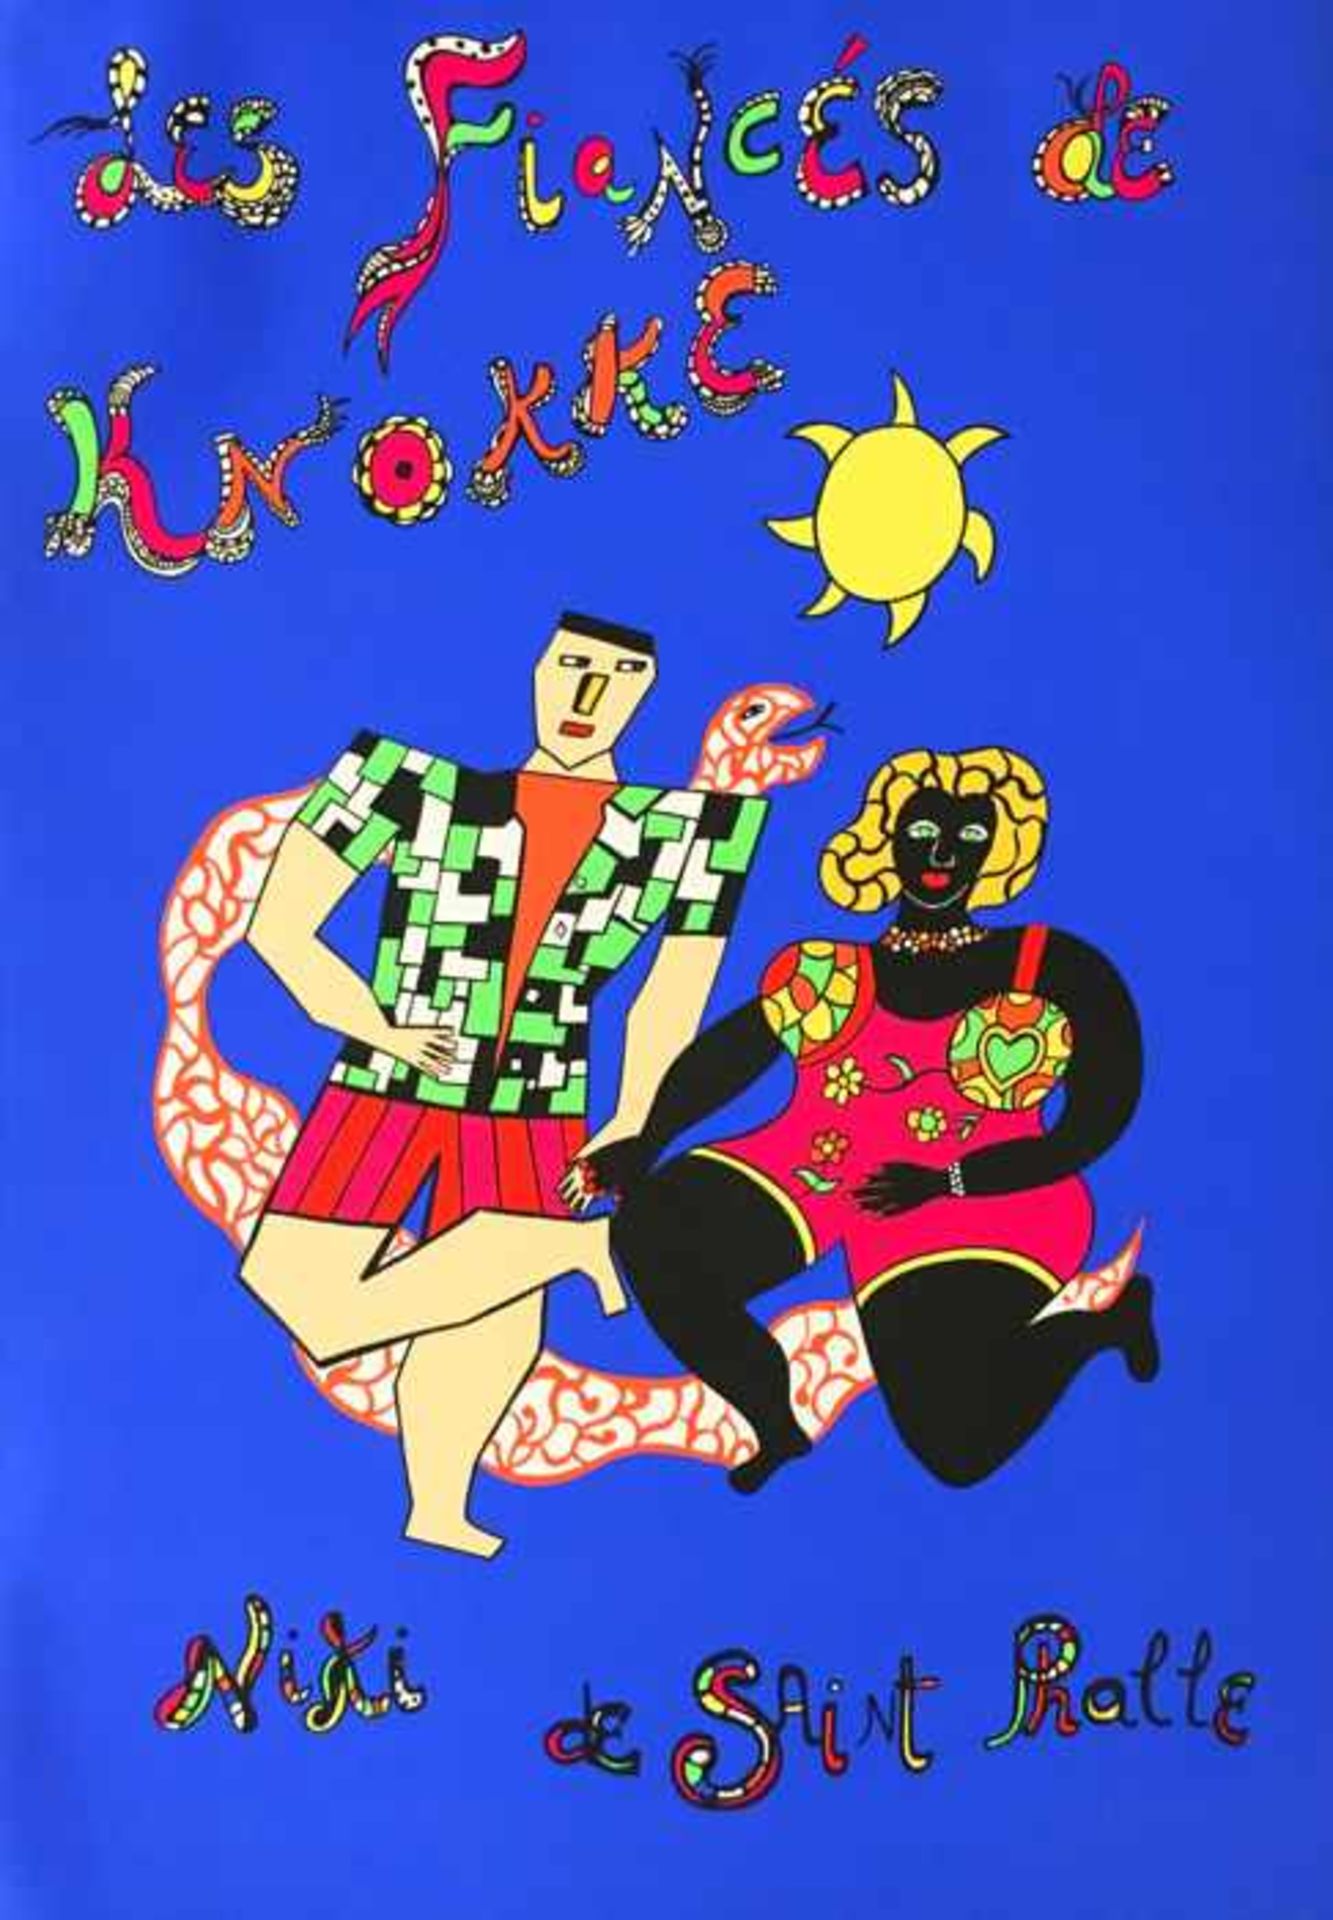 Niki de Saint Phalle - Les Fiancés de Knokke, 1992